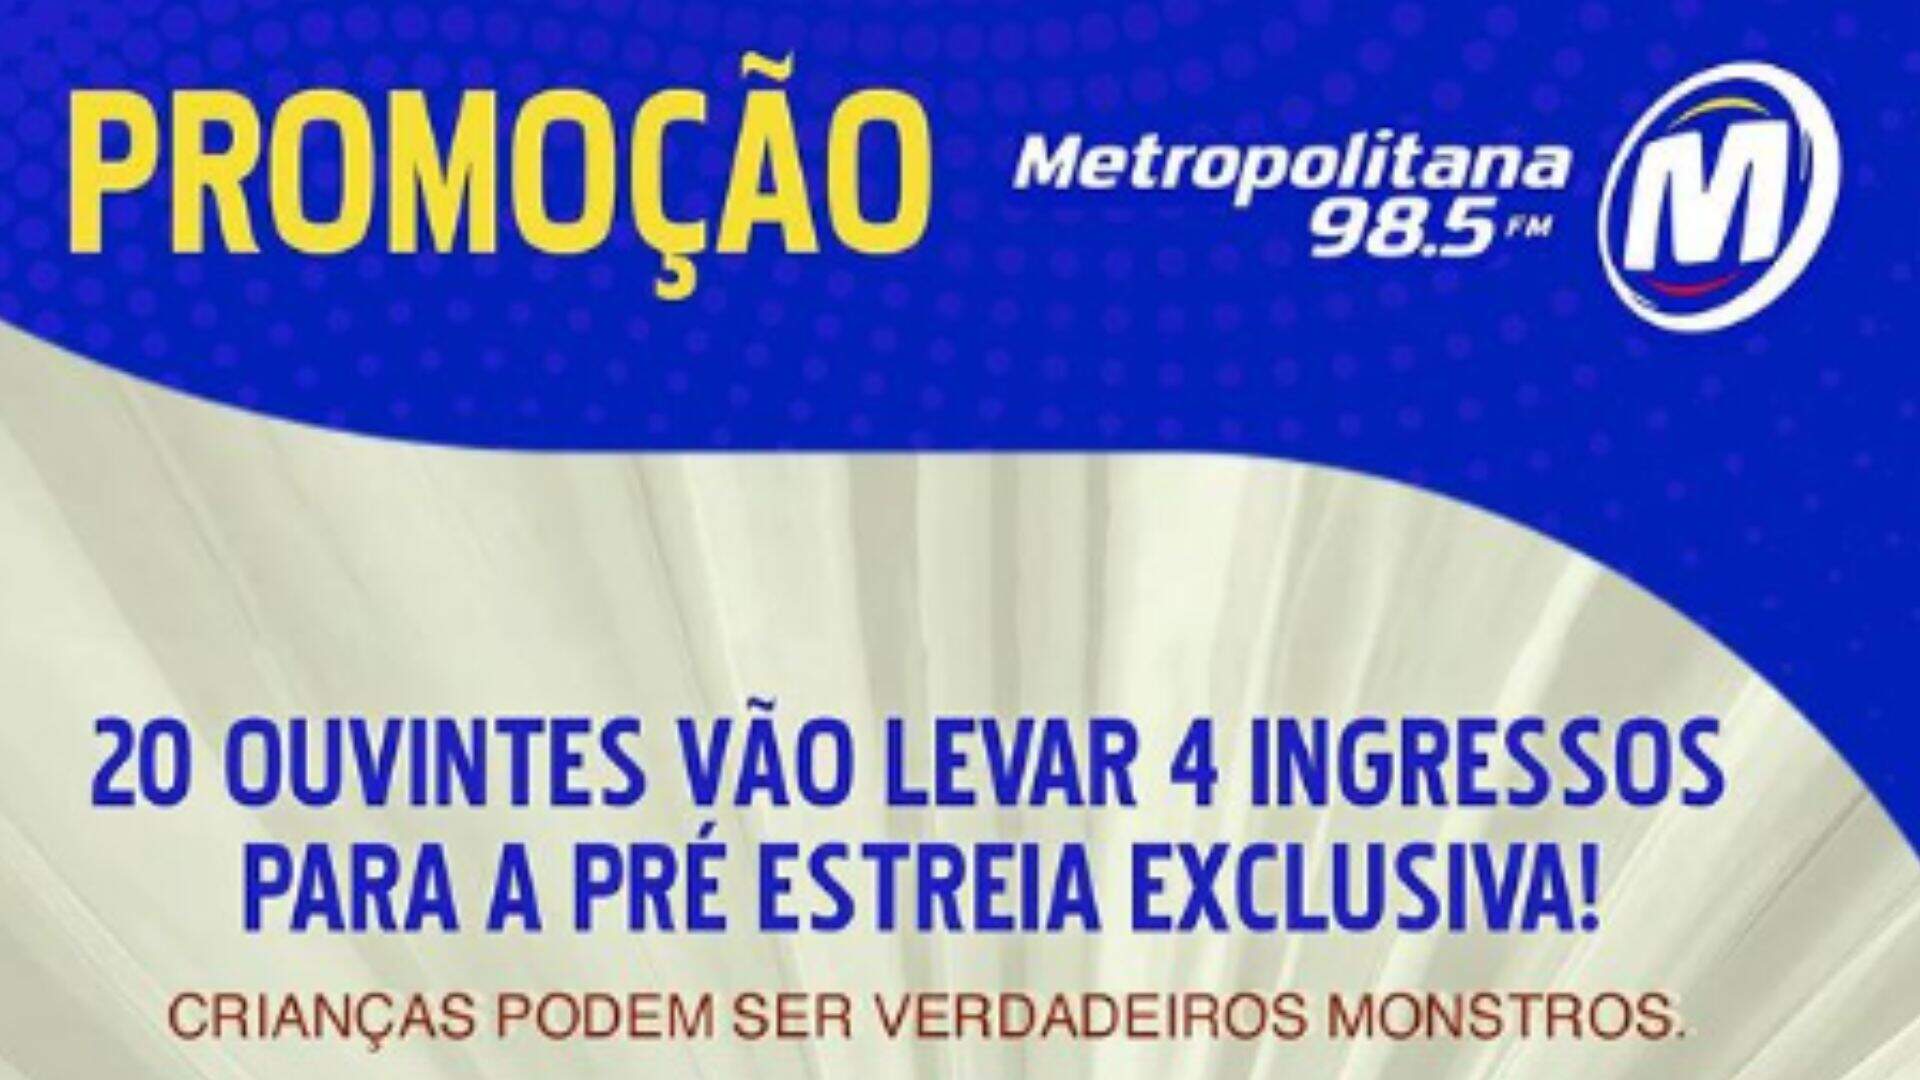 [ENCERRADA] Promoção: INGRESSOS DA PRÉ-ESTREIA DO FILME ABIGAIL NA METROPOLITANA - Metropolitana FM